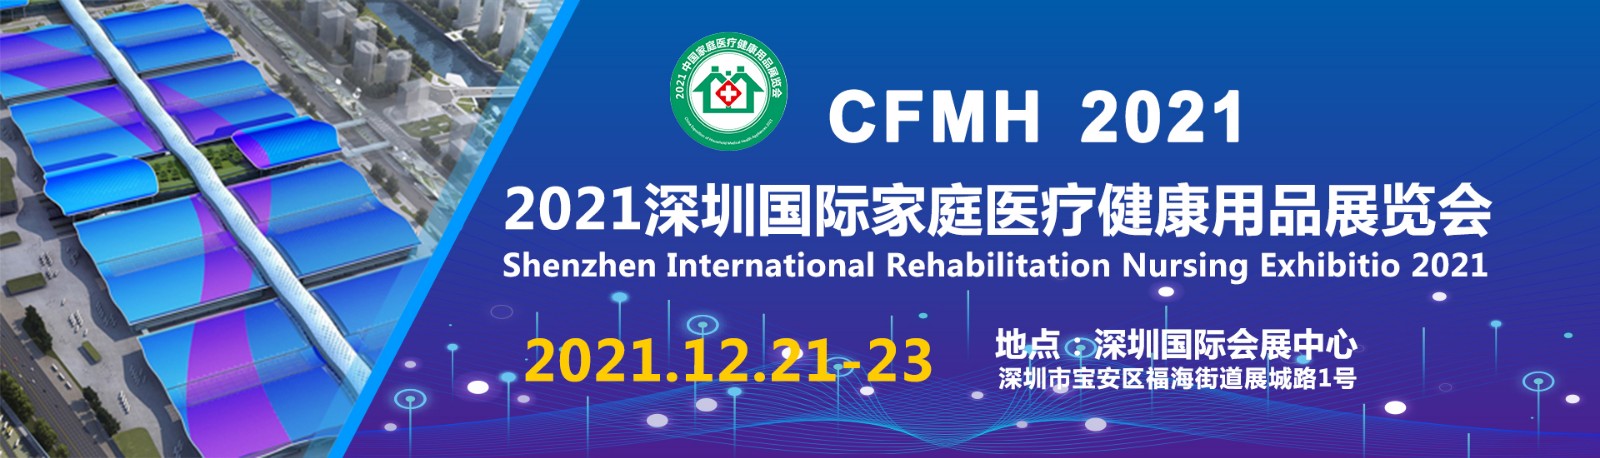 CFMH2021深圳国际家庭医疗健康用品展览会展会介绍